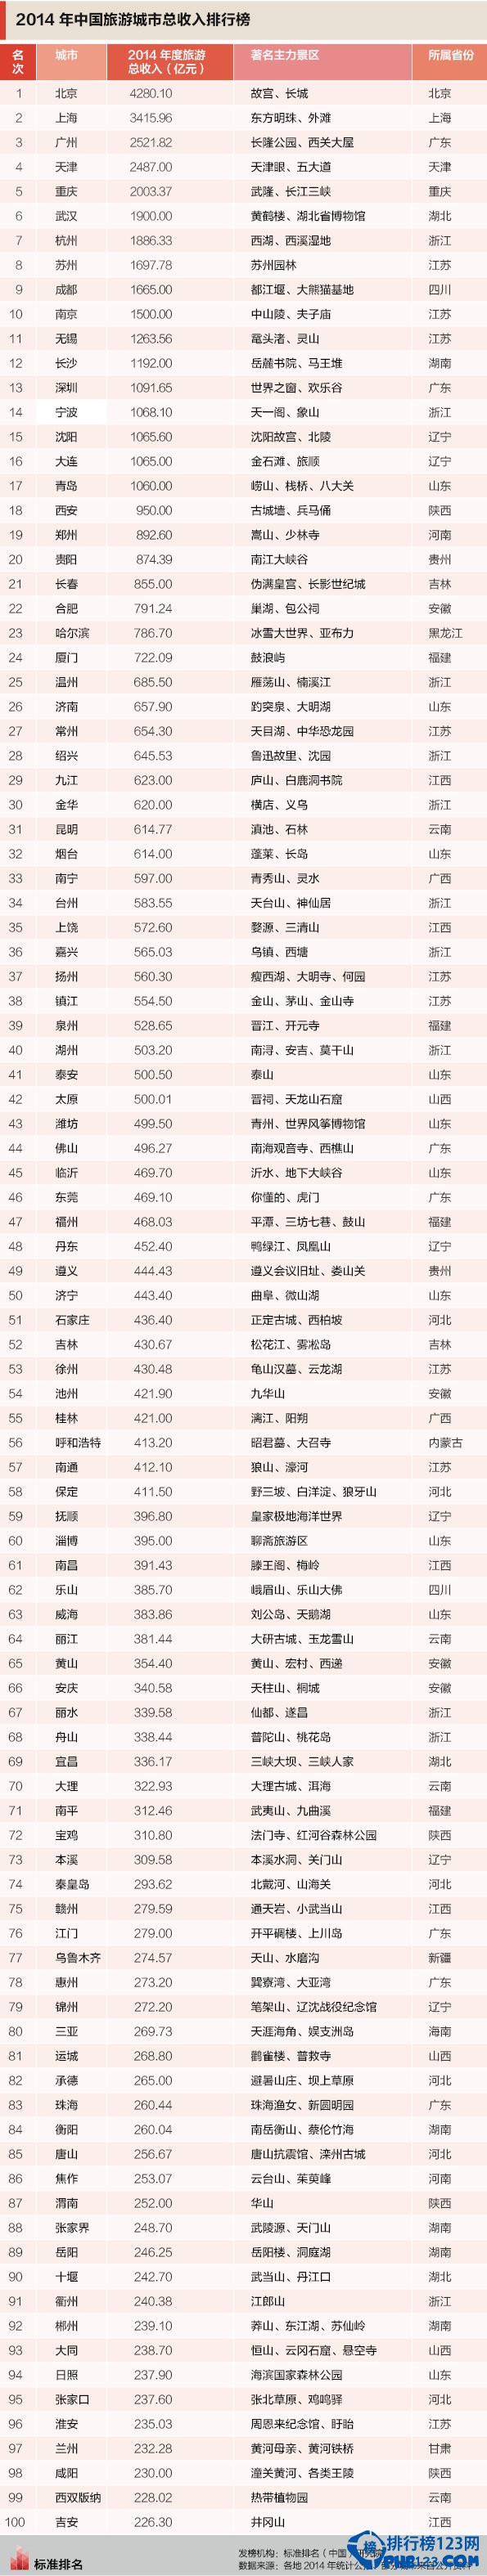 2015年中国旅游城市总收入排行榜